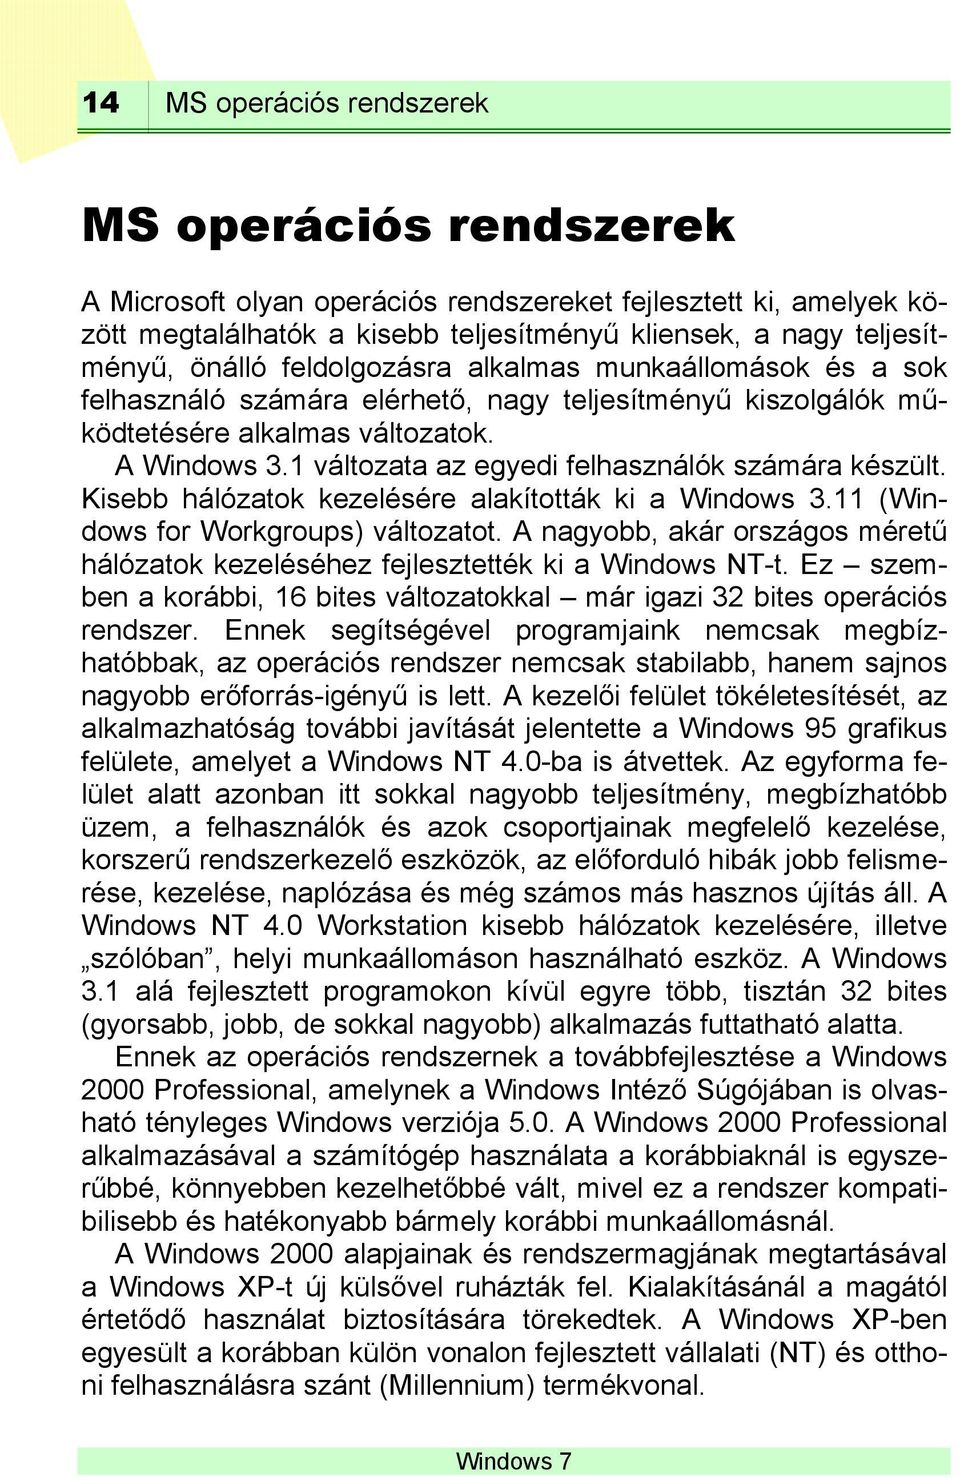 1 változata az egyedi felhasználók számára készült. Kisebb hálózatok kezelésére alakították ki a Windows 3.11 (Windows for Workgroups) változatot.